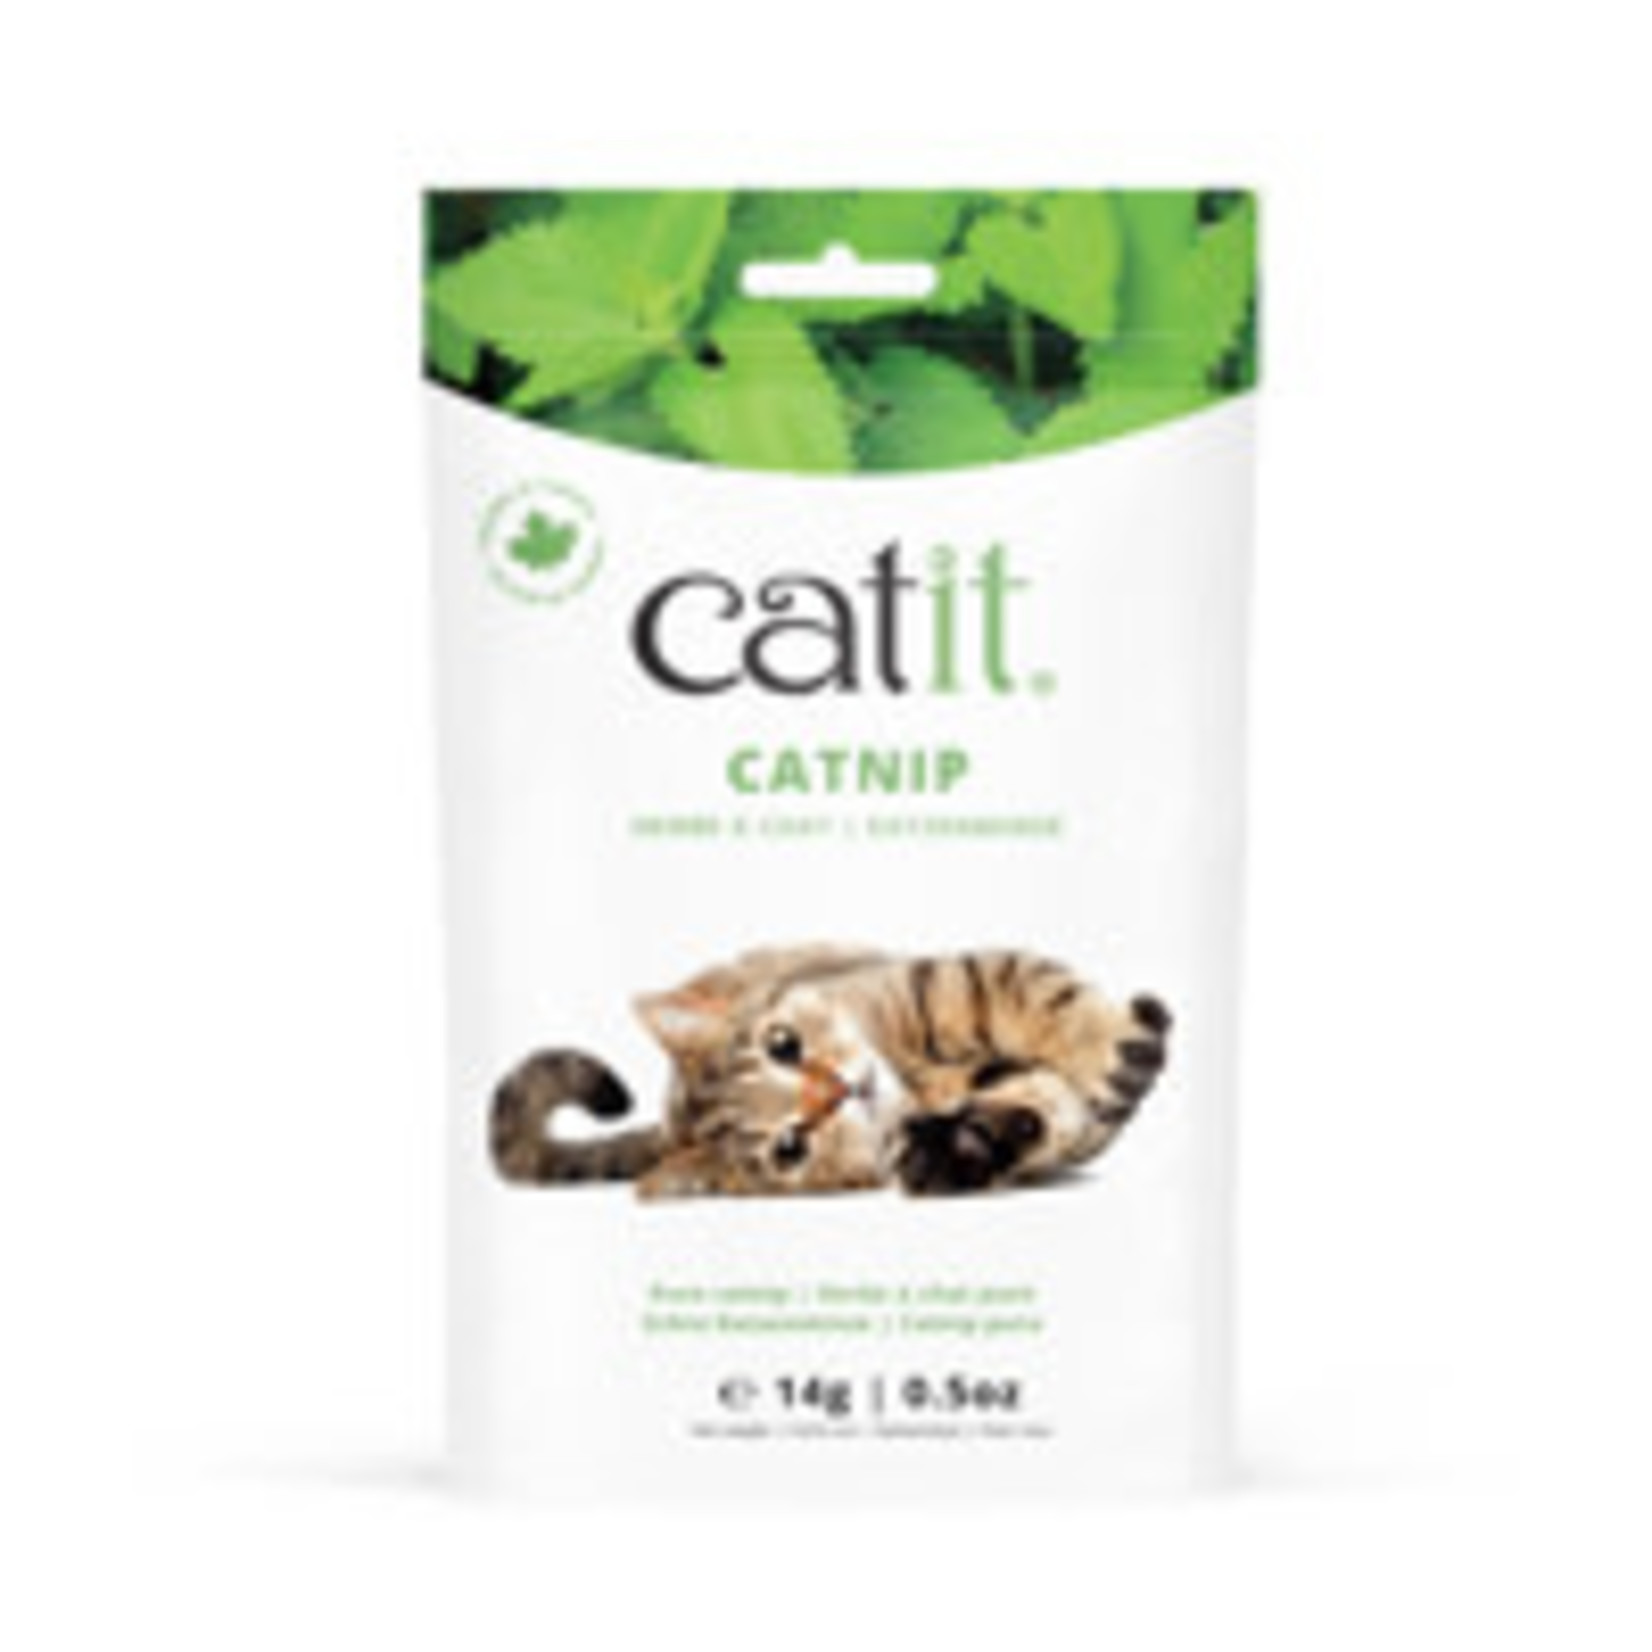 Catit Catit Catnip, 0.5 oz Bag